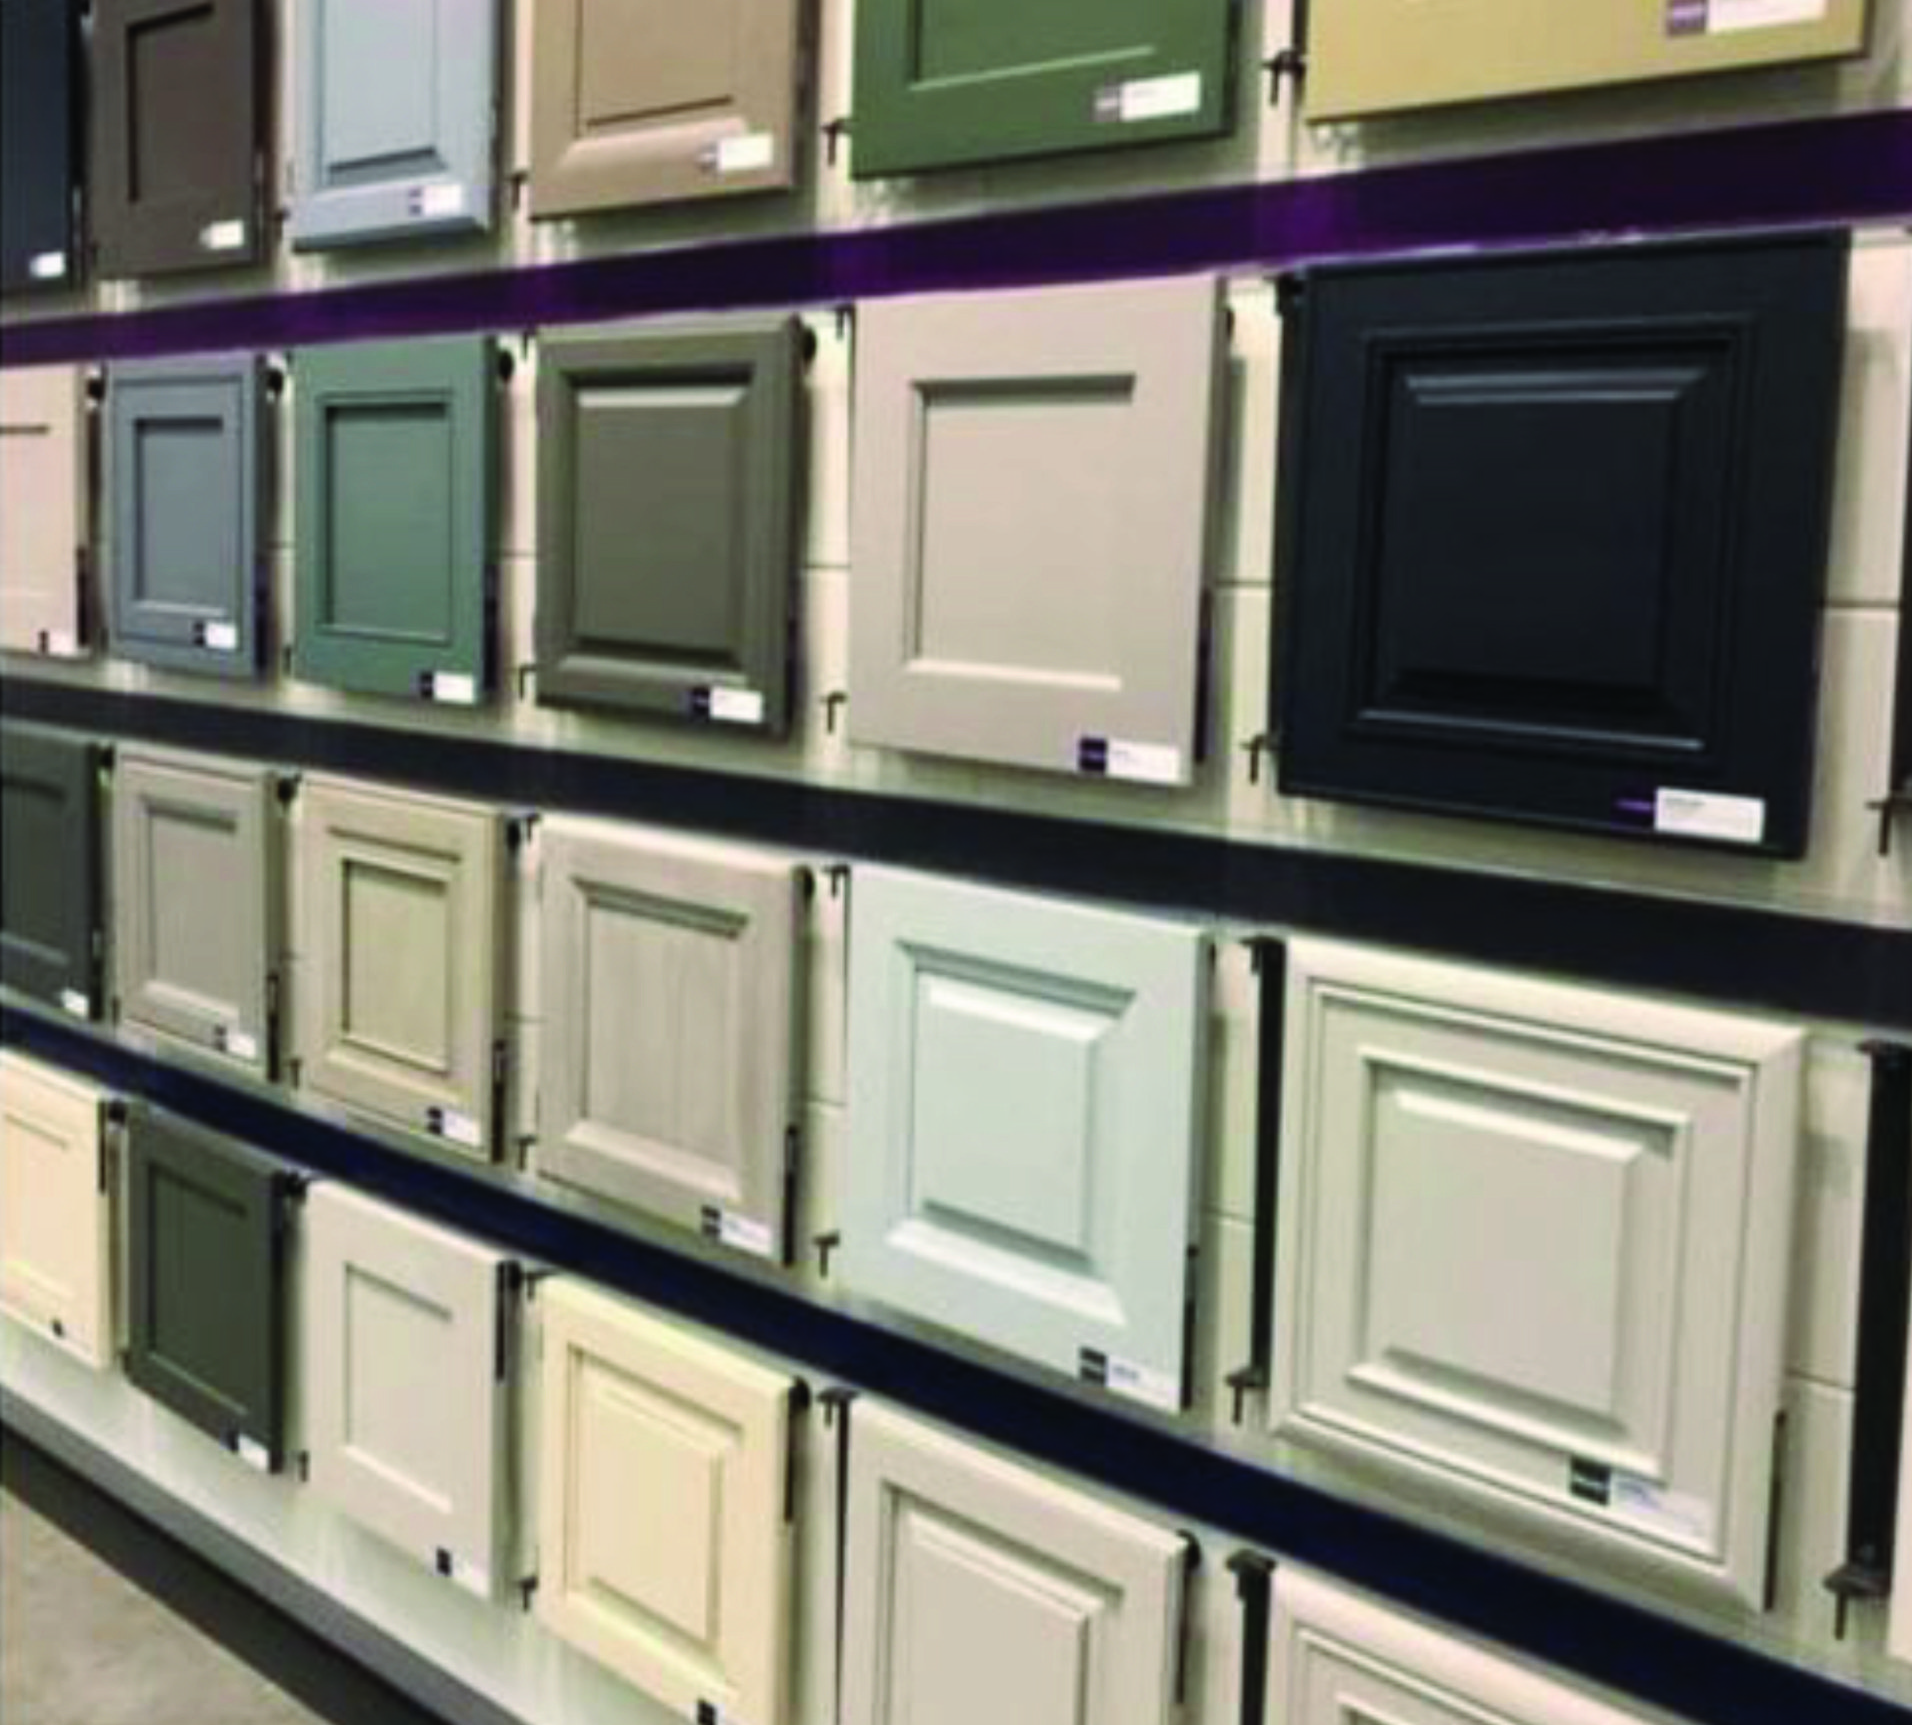 multi color cabinets